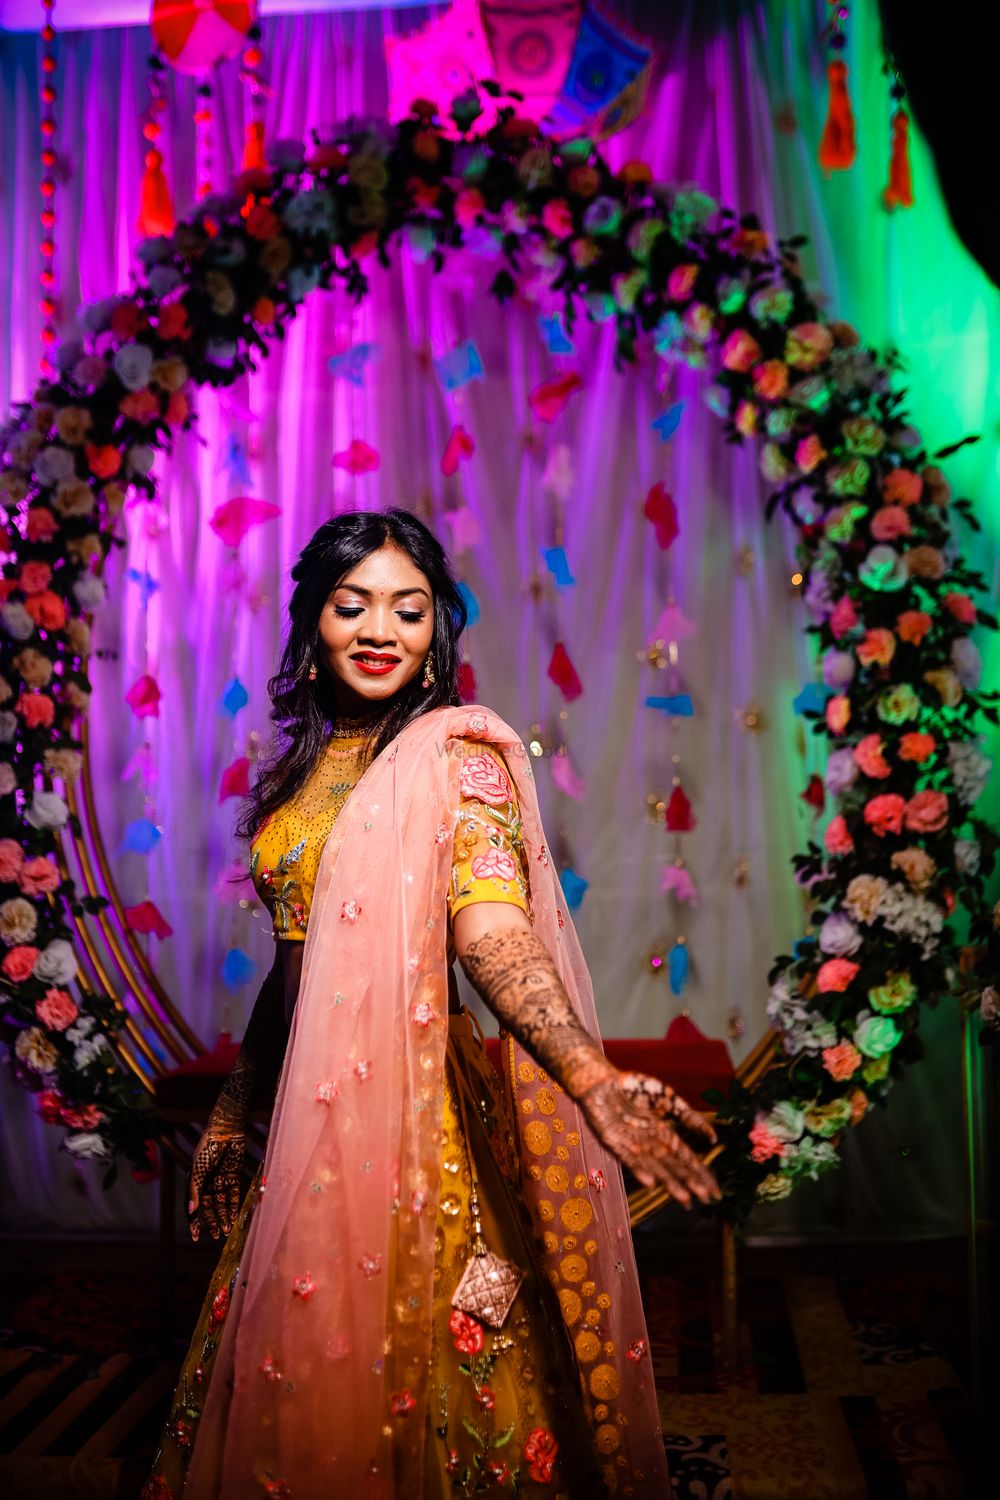 Photo From Rajni & Pratik - By Wedding Dori